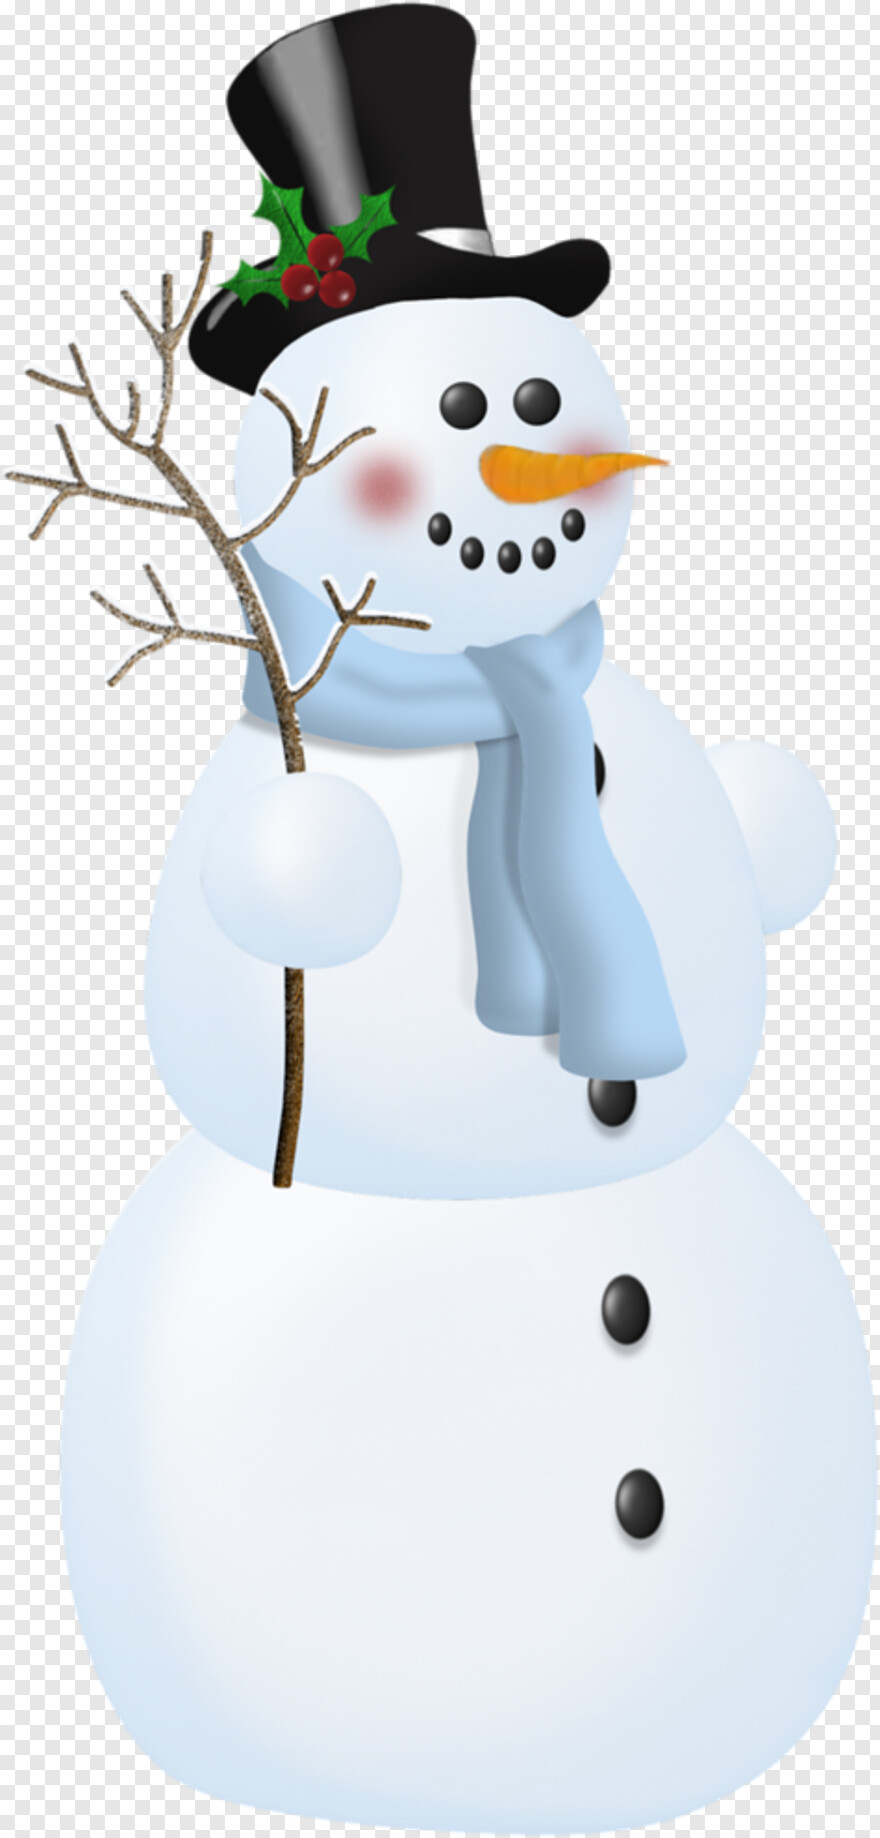 snowman-clipart # 616871